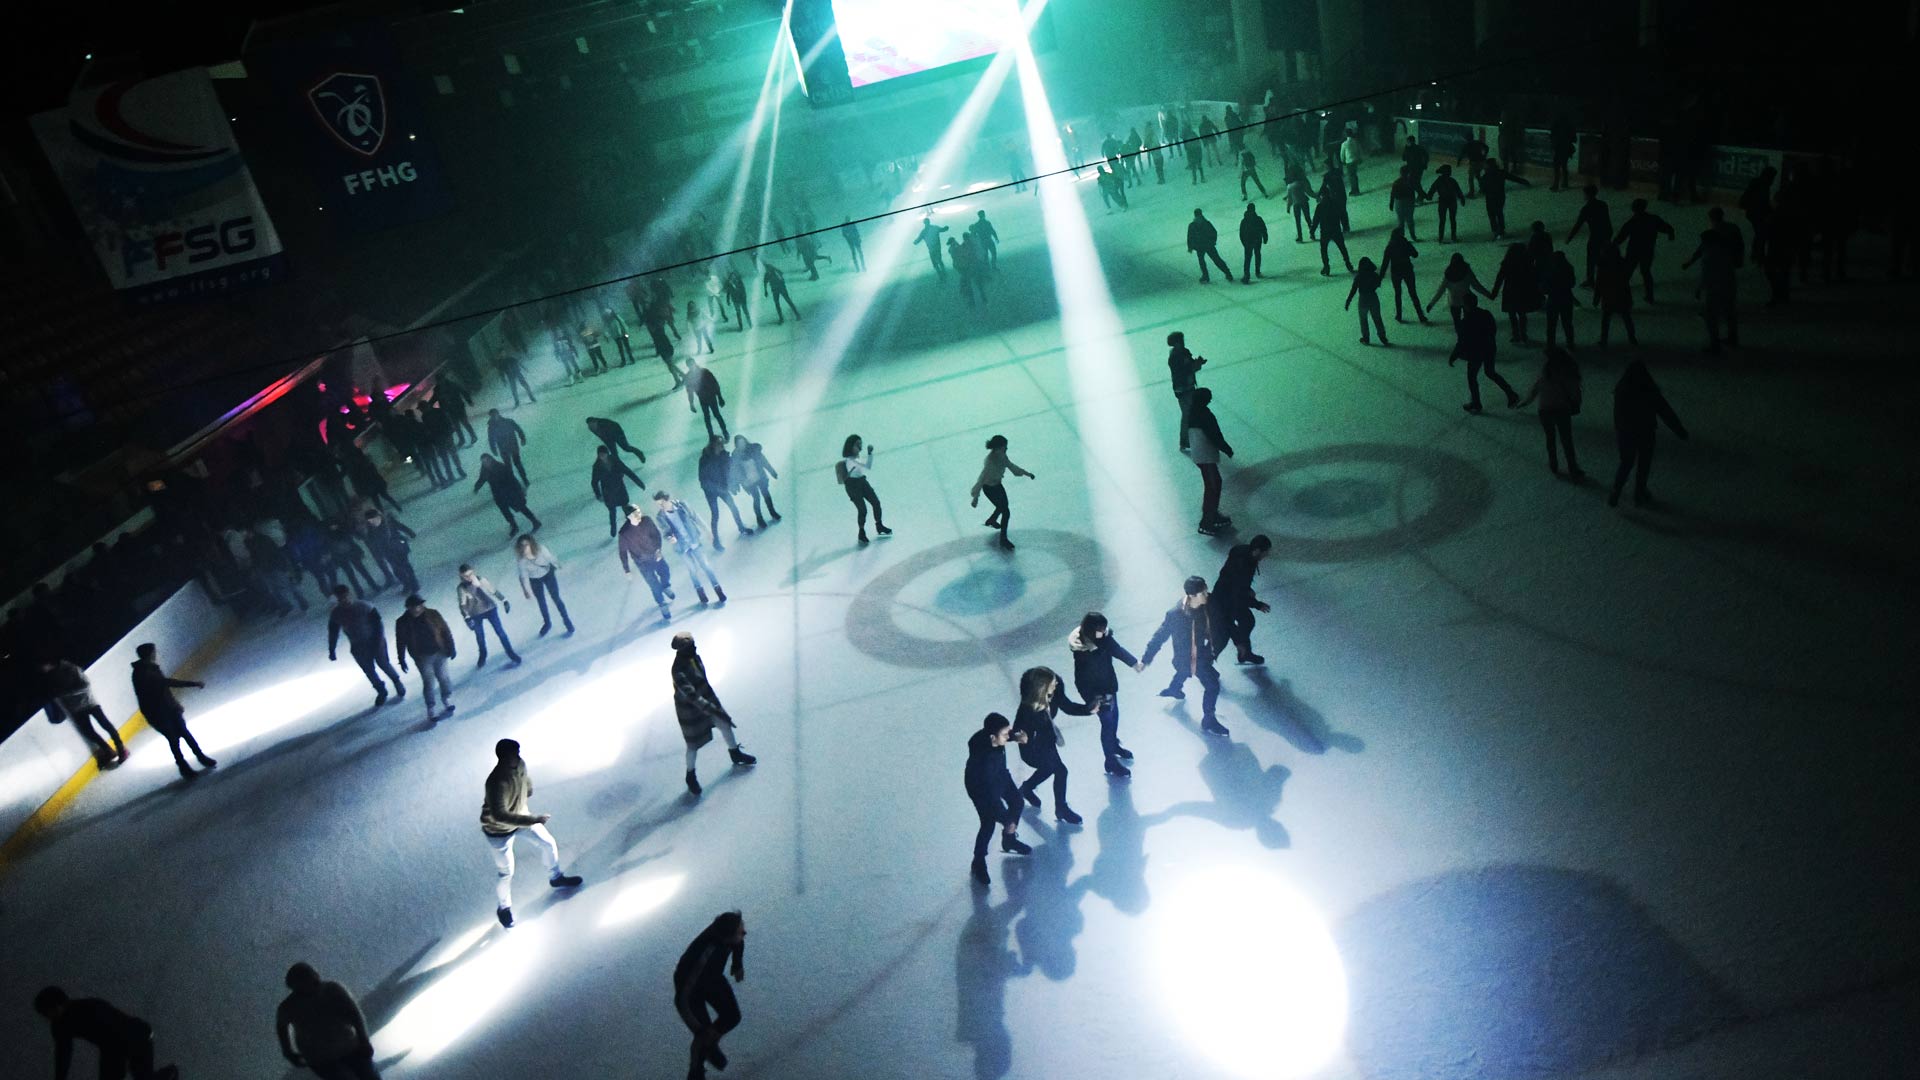 Des lumières mettent une ambiance de soirée à la Patinoire Olympique de Mulhouse